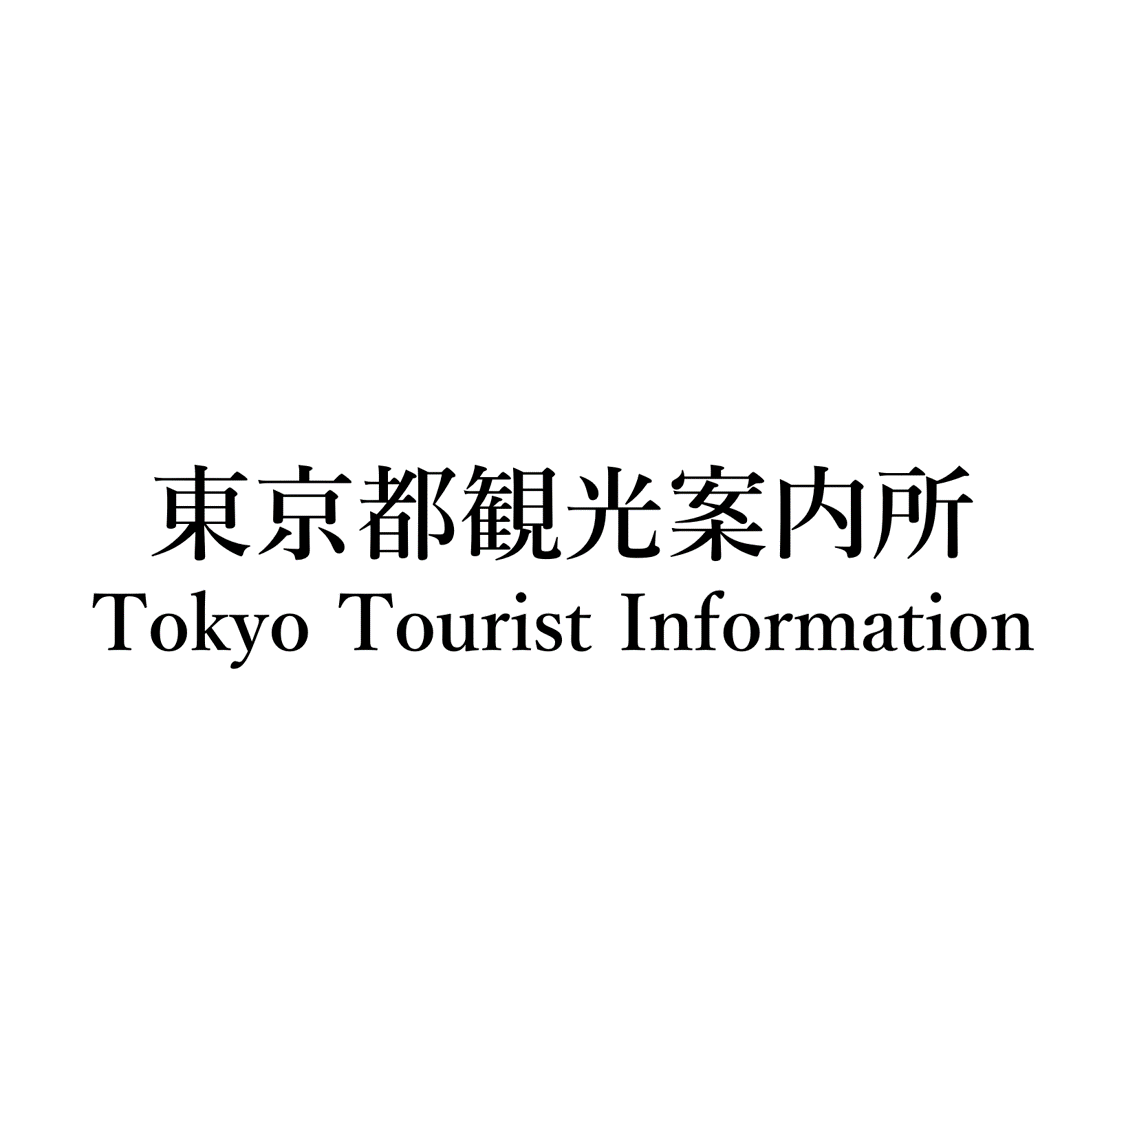 東京都観光案内所　Tokyo Tourist Information